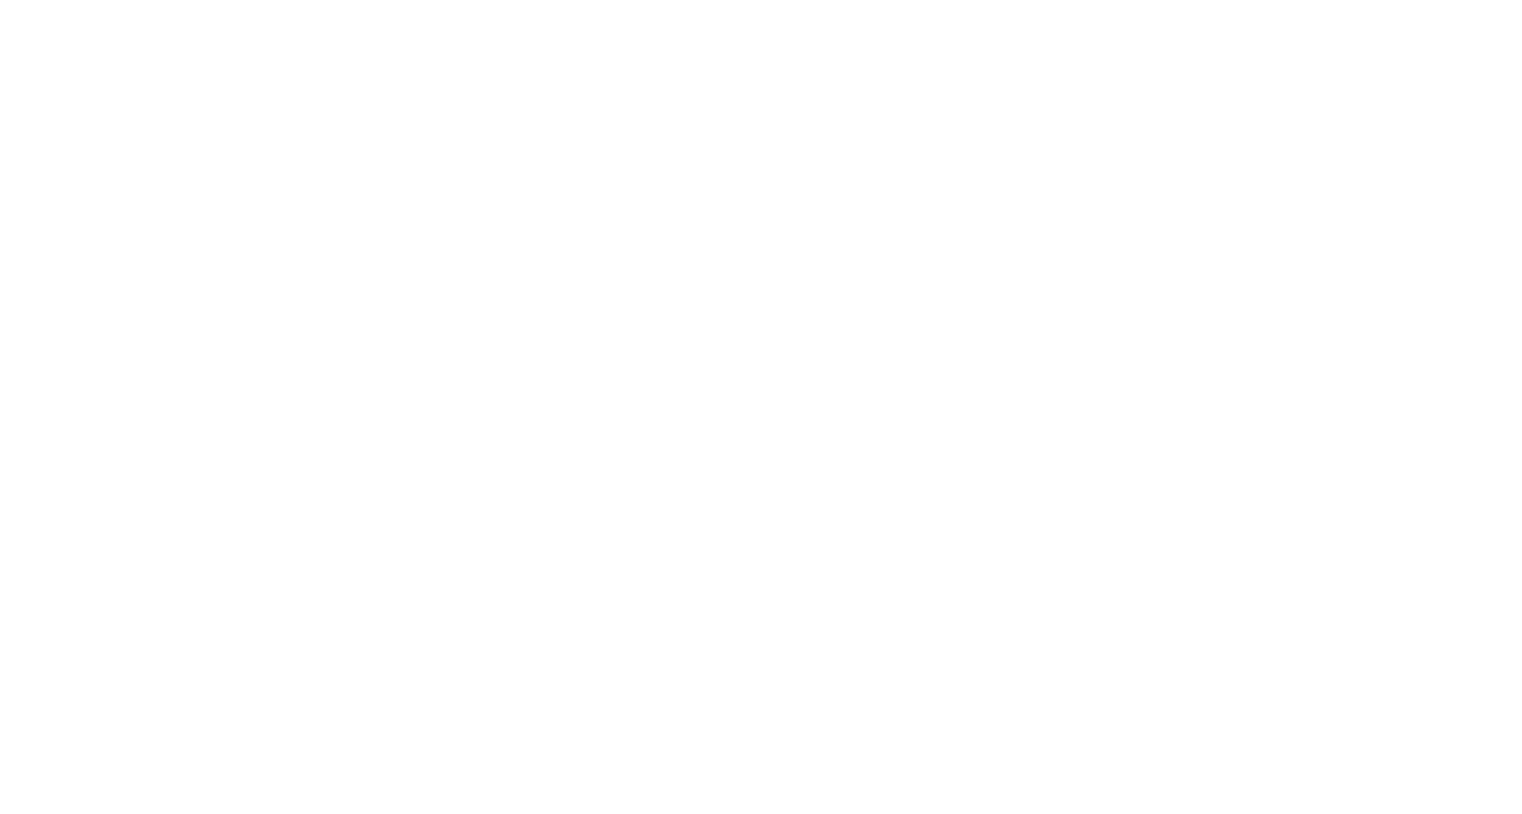 Кейс сервиса BRANDNATION - Фирменный стиль отеля и ресторана. Брендинговое агентство BRANDNATION в Москве и Санкт-Петербурге. Услуги: разработка логотипа и фирменного стиля, дизайн упаковки, брендбук, ребрендинг, разработка сайта.